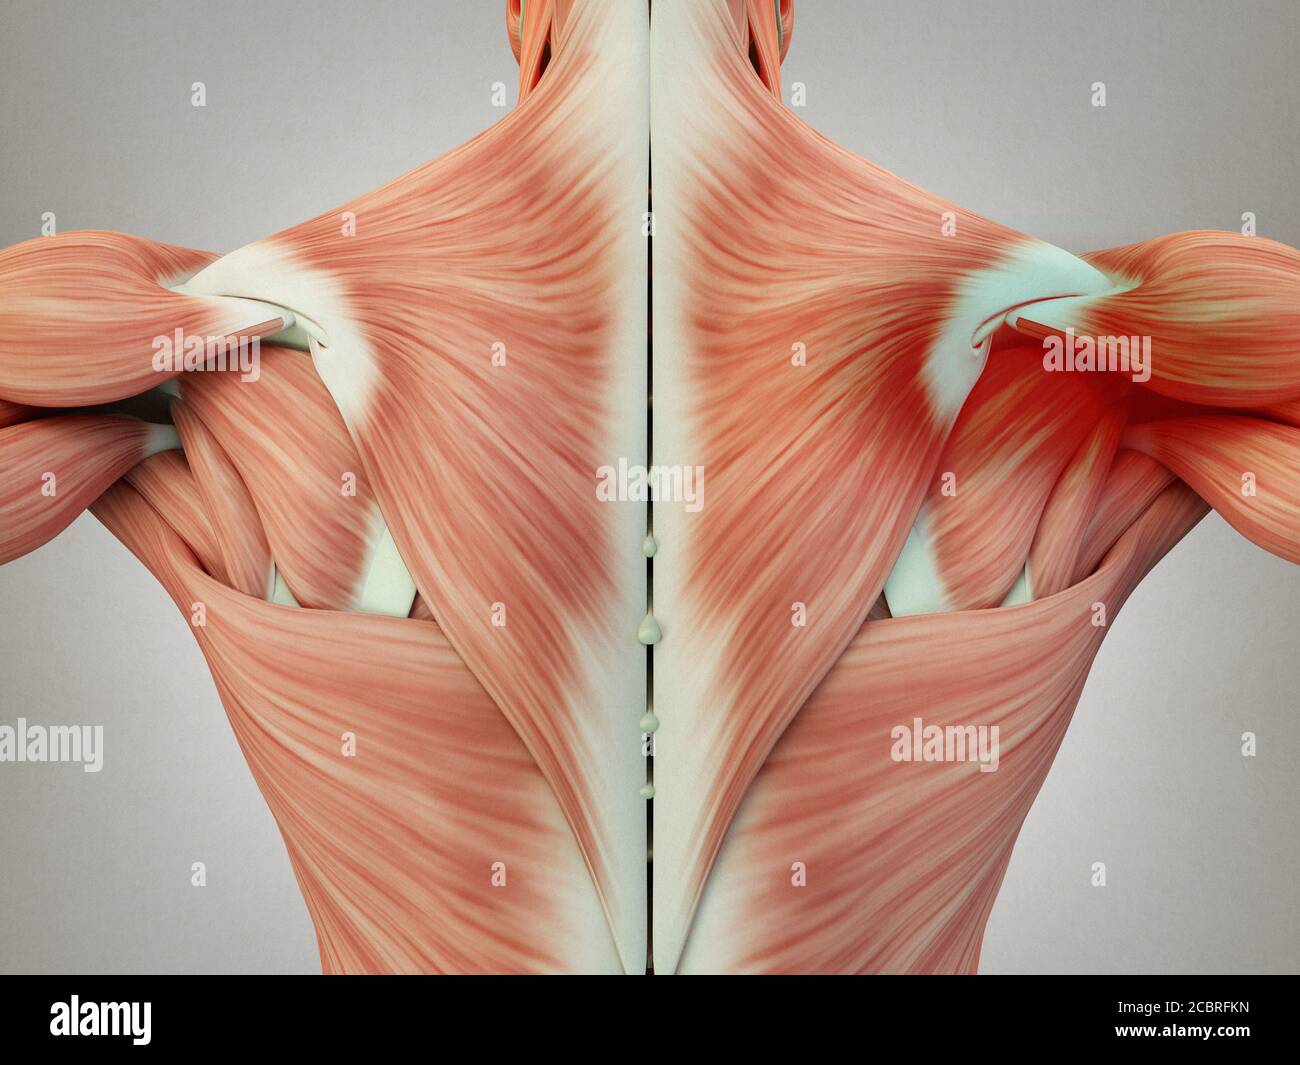 Anatomie humaine muscles du dos du torse, douleur zone de l'épaule gauche.  Illustration 3D Photo Stock - Alamy